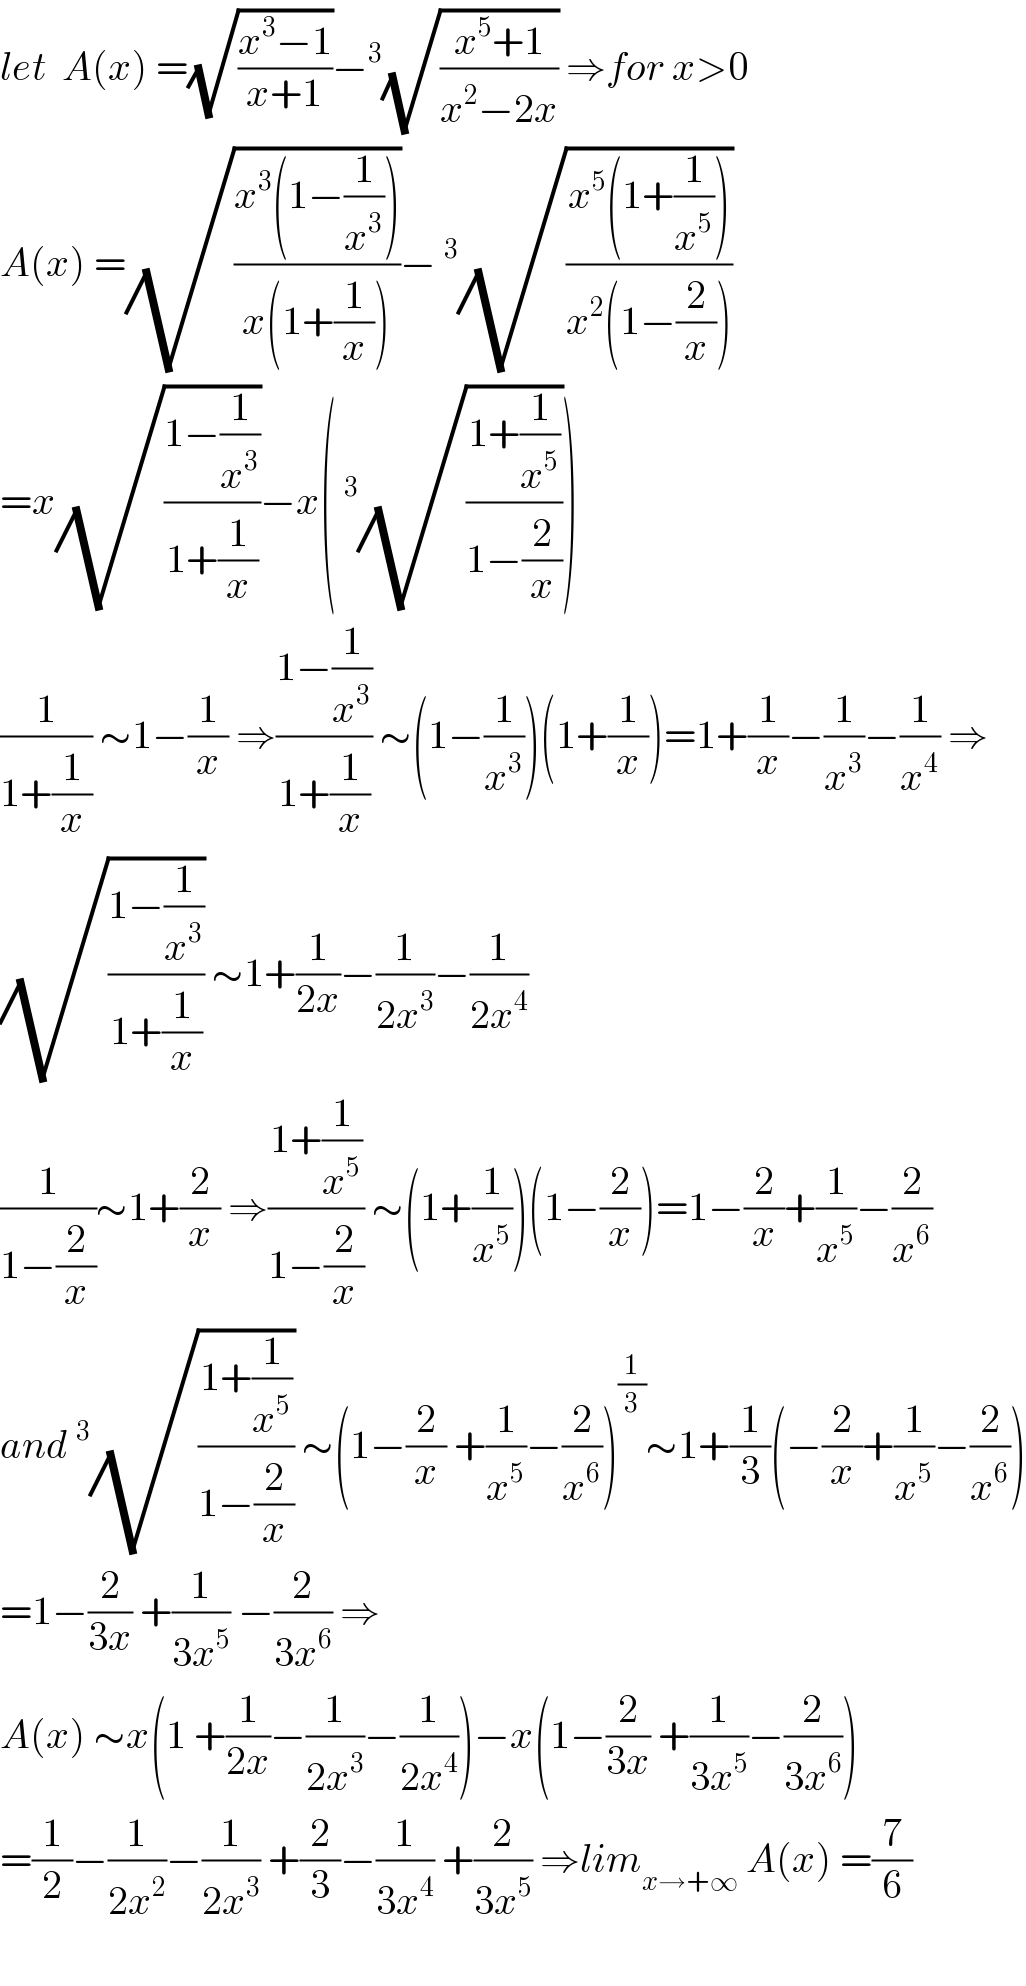 let  A(x) =(√((x^3 −1)/(x+1)))−^3 (√((x^5 +1)/(x^2 −2x))) ⇒for x>0  A(x) =(√((x^3 (1−(1/x^3 )))/(x(1+(1/x)))))−^3 (√((x^5 (1+(1/x^5 )))/(x^2 (1−(2/x)))))  =x(√((1−(1/x^3 ))/(1+(1/x))))−x(^3 (√((1+(1/x^5 ))/(1−(2/x)))))  (1/(1+(1/x))) ∼1−(1/x) ⇒((1−(1/x^3 ))/(1+(1/x))) ∼(1−(1/x^3 ))(1+(1/x))=1+(1/x)−(1/x^3 )−(1/x^4 ) ⇒  (√((1−(1/x^3 ))/(1+(1/x)))) ∼1+(1/(2x))−(1/(2x^3 ))−(1/(2x^4 ))  (1/(1−(2/x)))∼1+(2/x) ⇒((1+(1/x^5 ))/(1−(2/x))) ∼(1+(1/x^5 ))(1−(2/x))=1−(2/x)+(1/x^5 )−(2/x^6 )  and^3 (√((1+(1/x^5 ))/(1−(2/x)))) ∼(1−(2/x) +(1/x^5 )−(2/x^6 ))^(1/3) ∼1+(1/3)(−(2/x)+(1/x^5 )−(2/x^6 ))  =1−(2/(3x)) +(1/(3x^5 )) −(2/(3x^6 )) ⇒  A(x) ∼x(1 +(1/(2x))−(1/(2x^3 ))−(1/(2x^4 )))−x(1−(2/(3x)) +(1/(3x^5 ))−(2/(3x^6 )))  =(1/2)−(1/(2x^2 ))−(1/(2x^3 )) +(2/3)−(1/(3x^4 )) +(2/(3x^5 )) ⇒lim_(x→+∞)  A(x) =(7/6)    